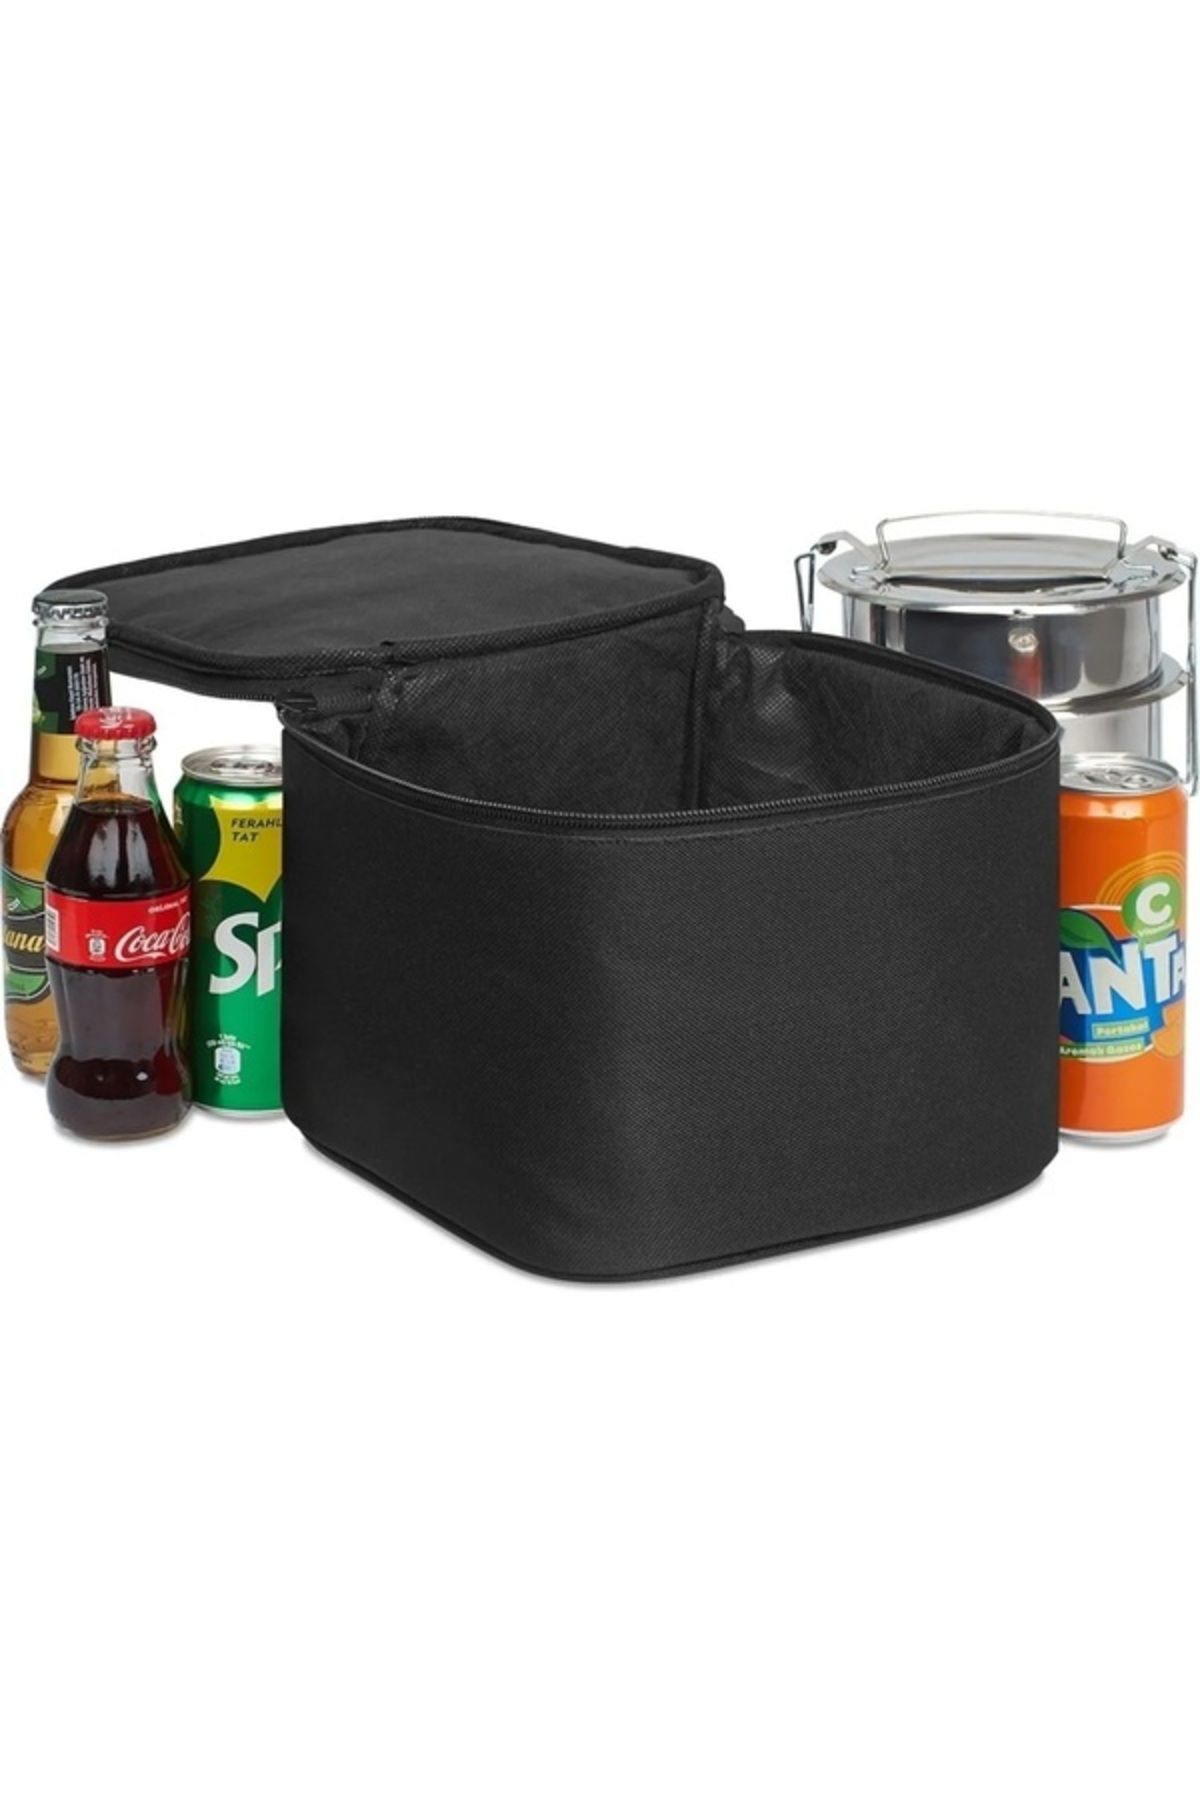 Ankaflex Piknik Termal Yiyecek Çantası Okul Beslenme Çantası Sıcak Tutucu Soğuk Tutucu Çanta